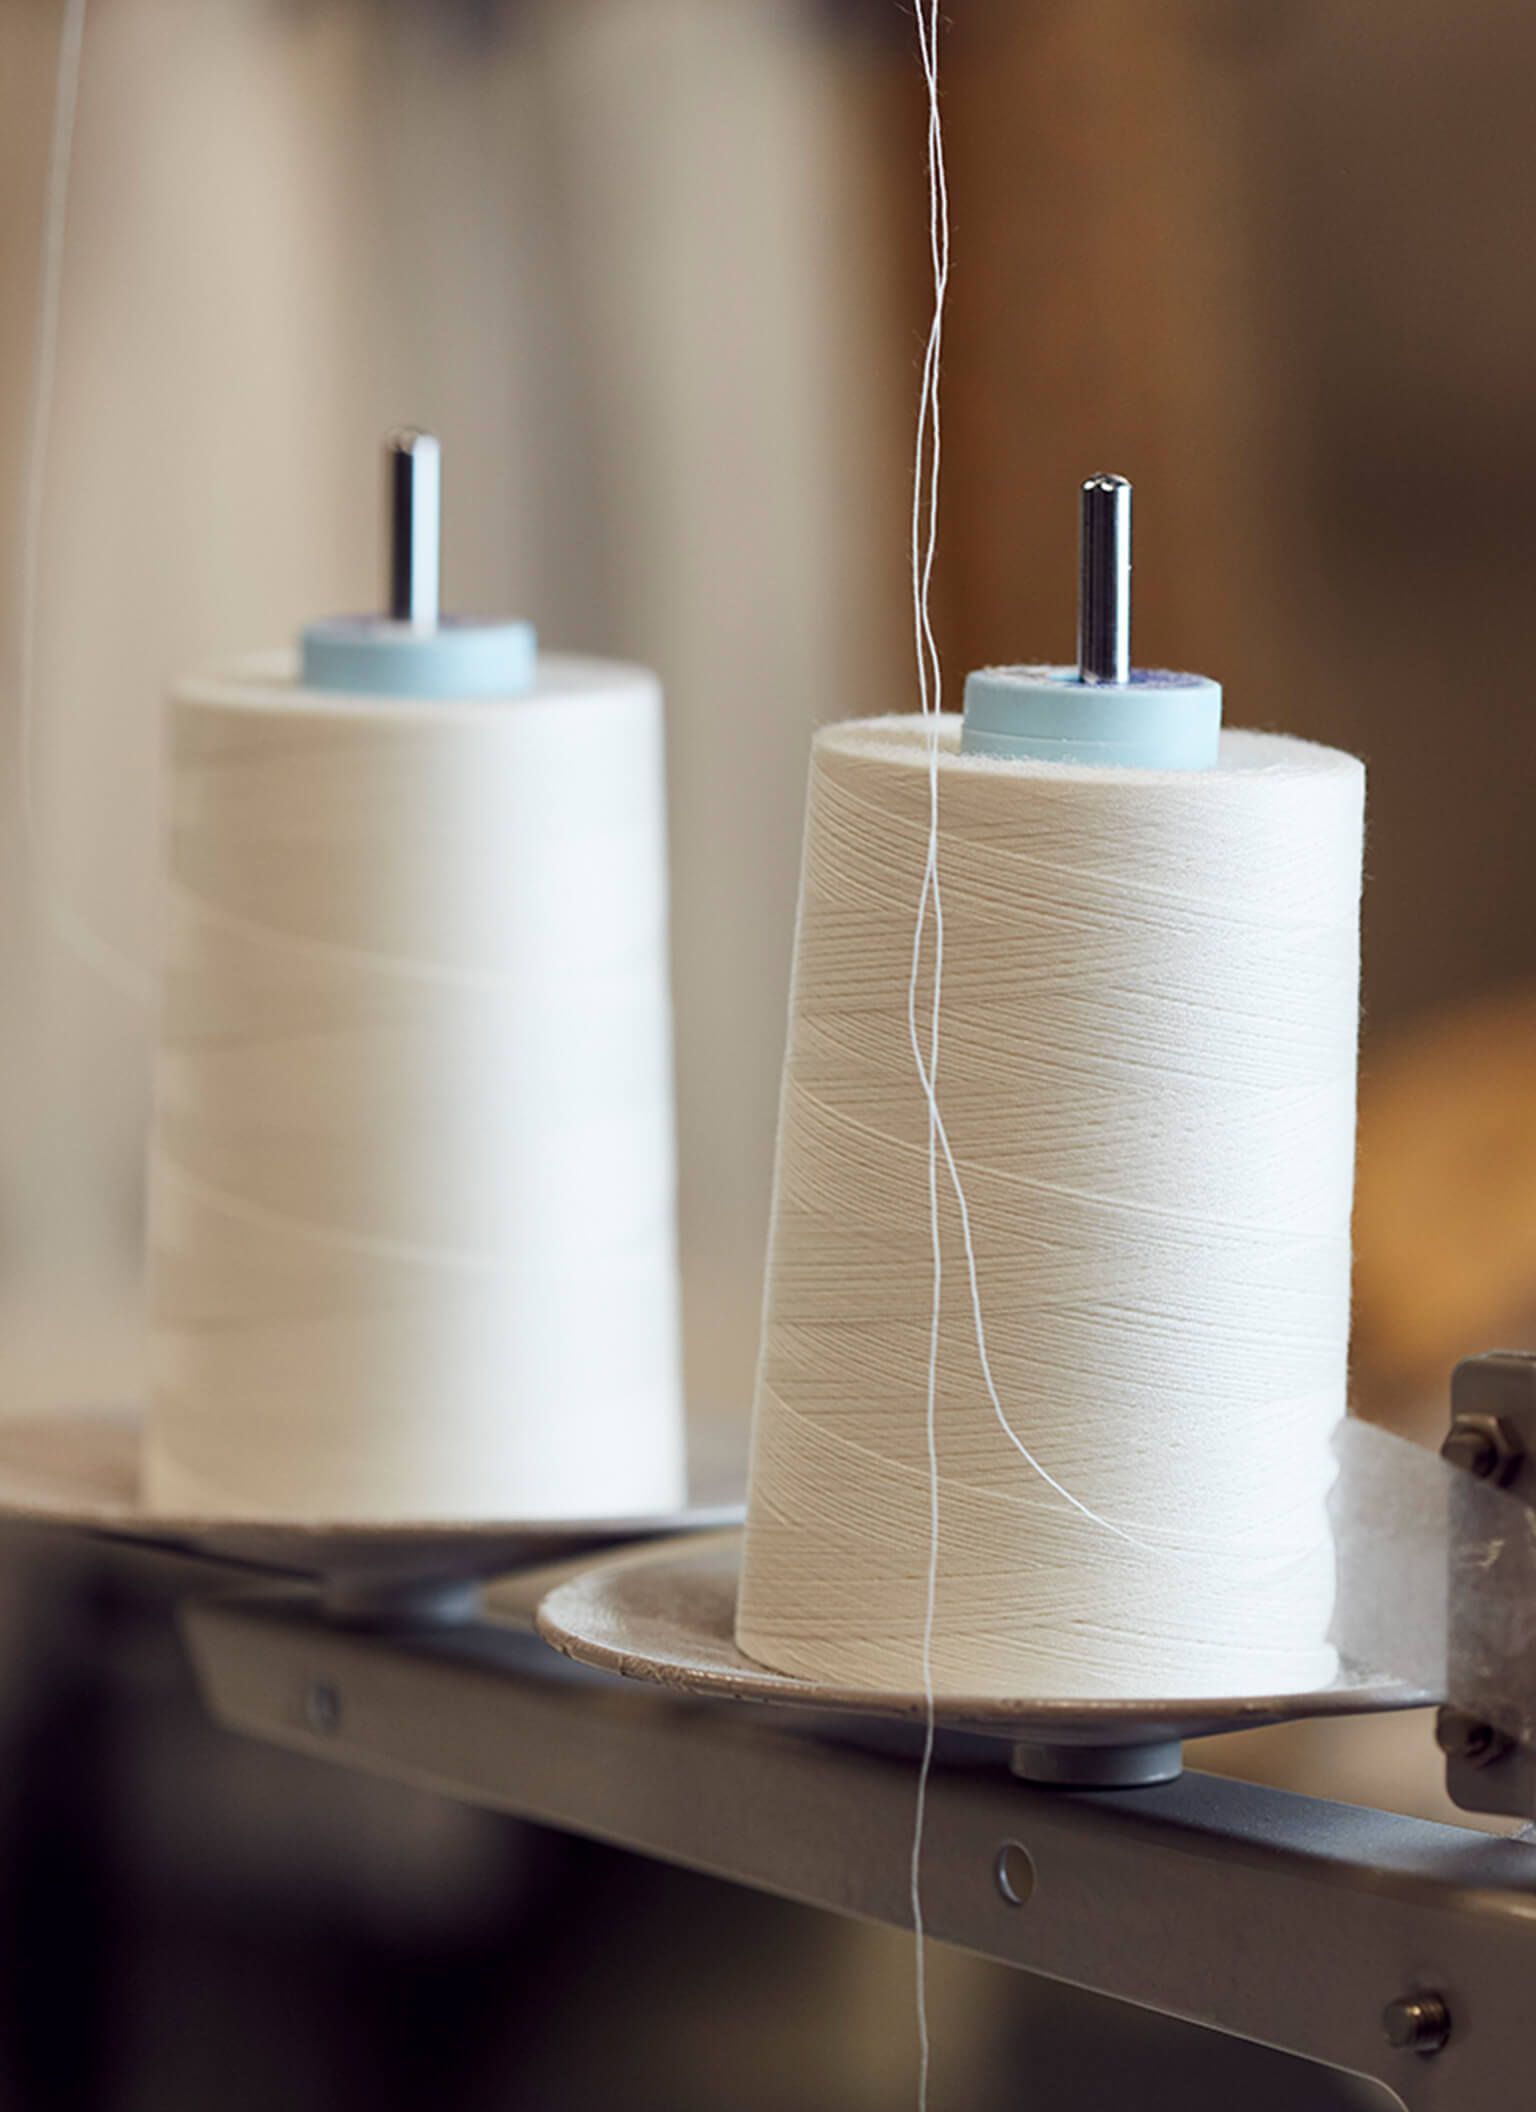 Herbert Parkinson - Sewing thread